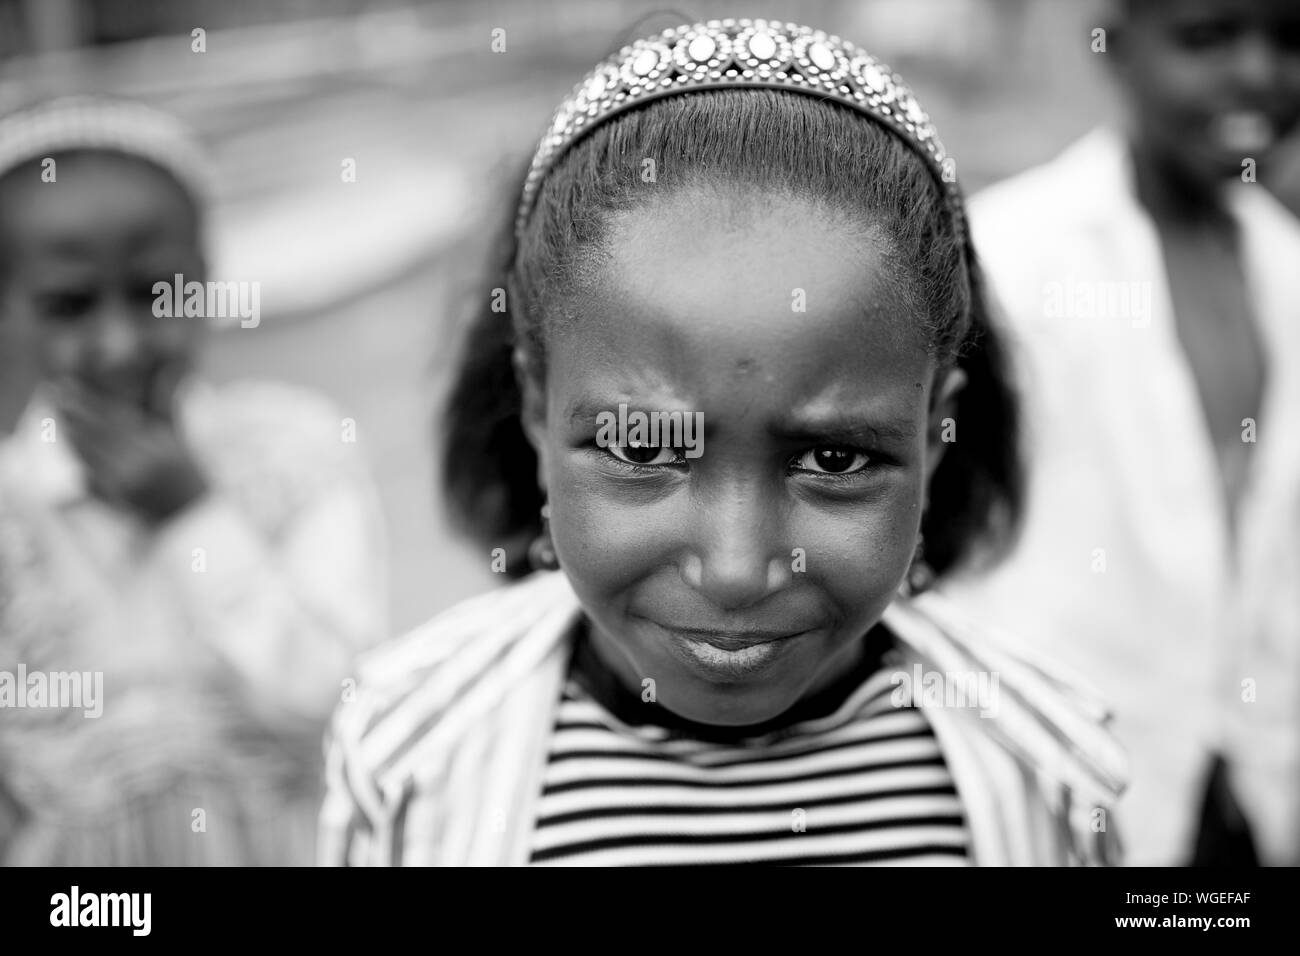 OROMIA, Äthiopien - April 20, 2015: Closeup Portrait eines nicht identifizierten Kind in der oromia Region Äthiopiens Stockfoto